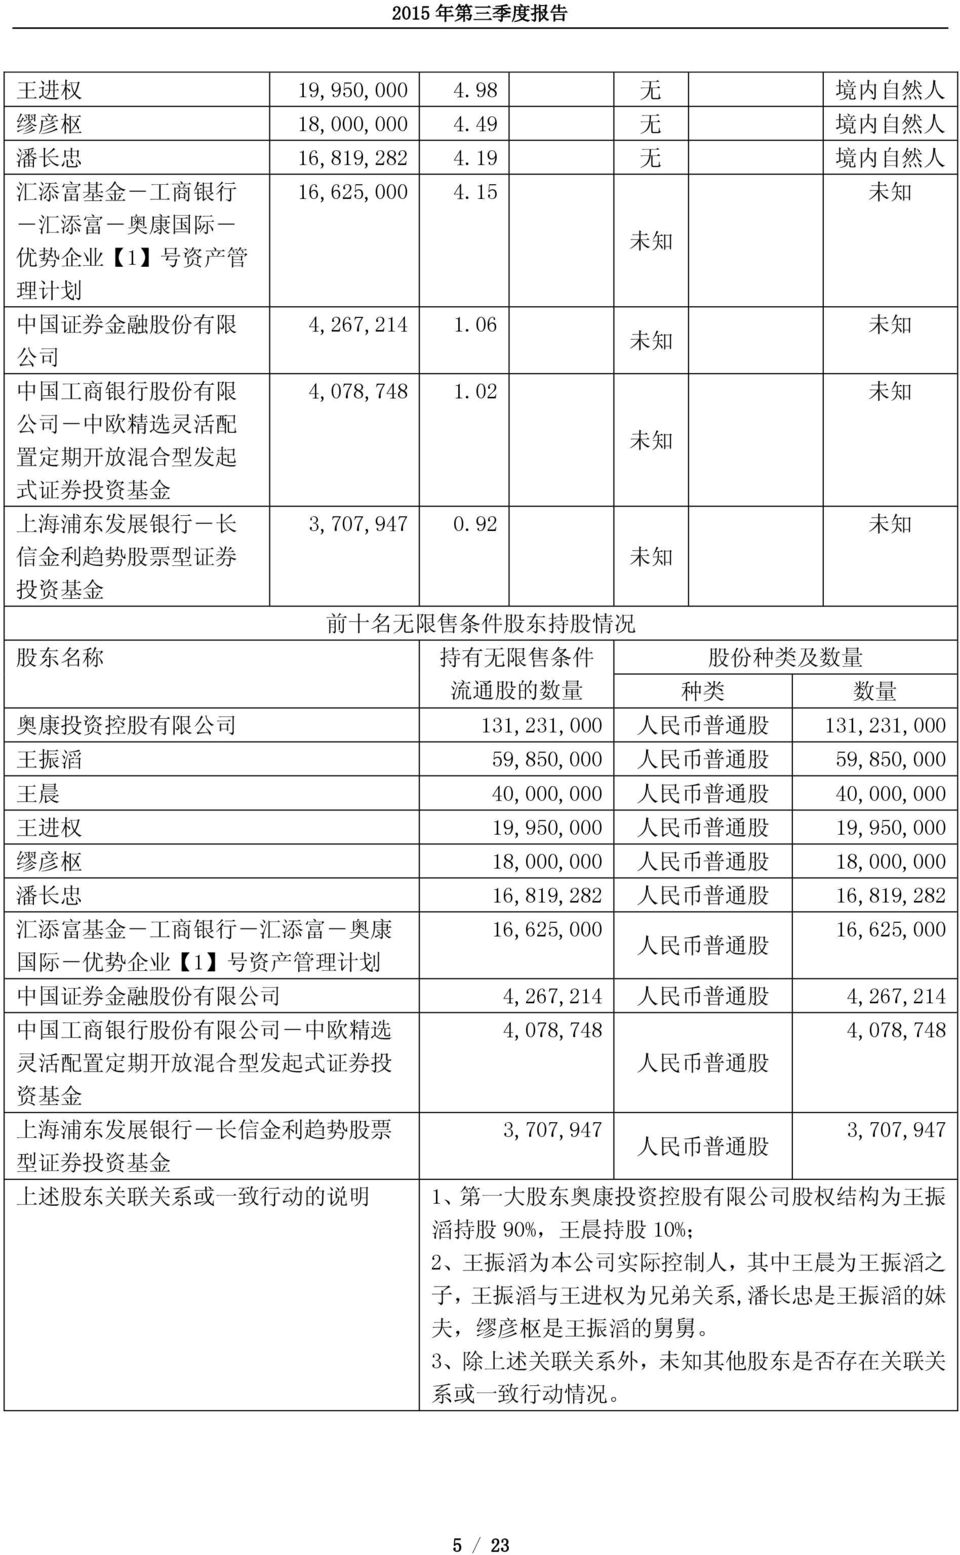 02 未 知 公 司 - 中 欧 精 选 灵 活 配 置 定 期 开 放 混 合 型 发 起 未 知 式 证 券 投 资 基 金 上 海 浦 东 发 展 银 行 - 长 3,707,947 0.